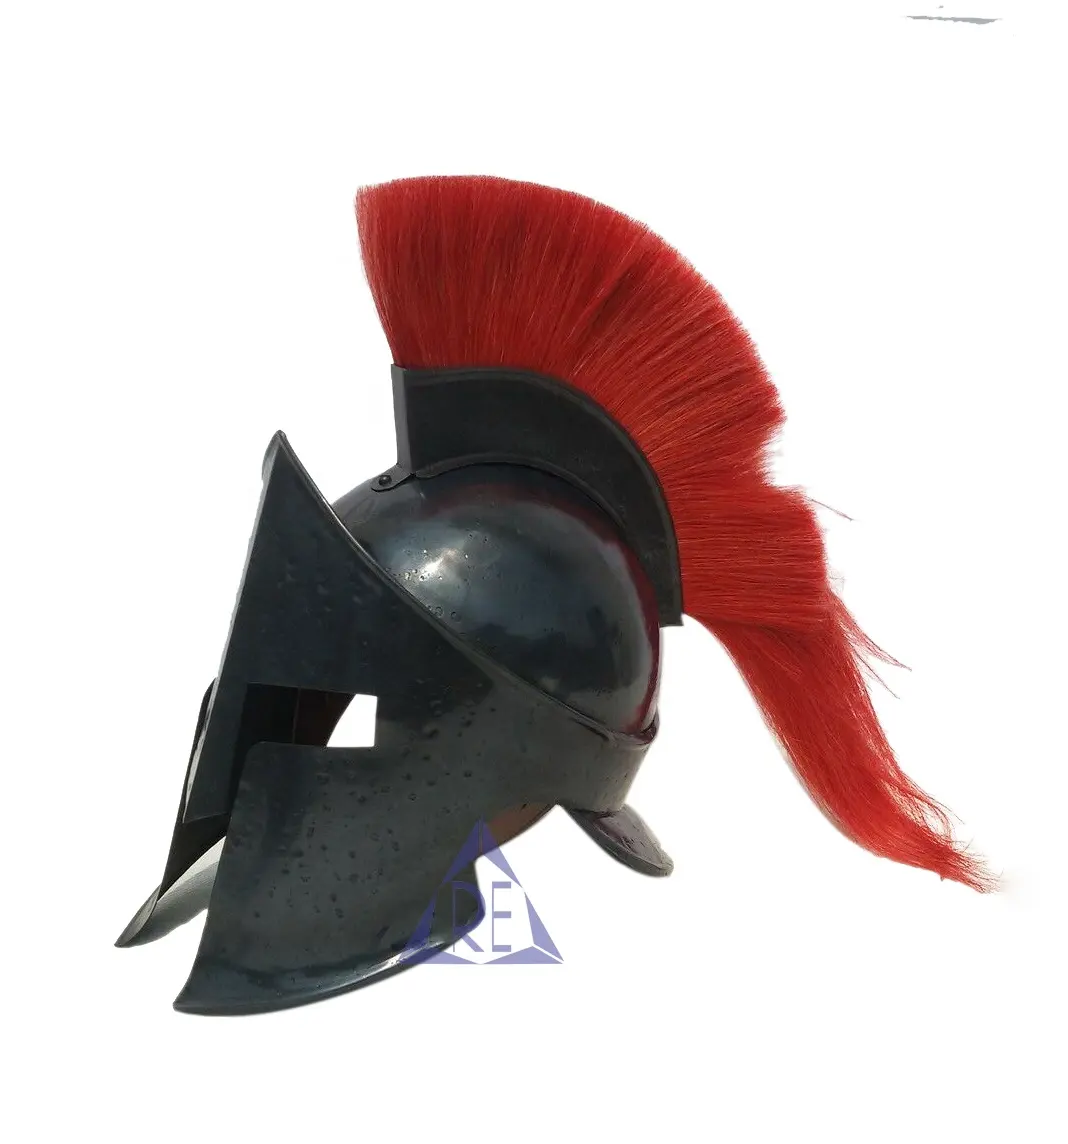 Yeni roma siyah kral Spartan kask ile kırmızı tüy ortaçağ şövalye haçlı zırh ücretsiz ahşap standı ile en iyi erkekler için hediye